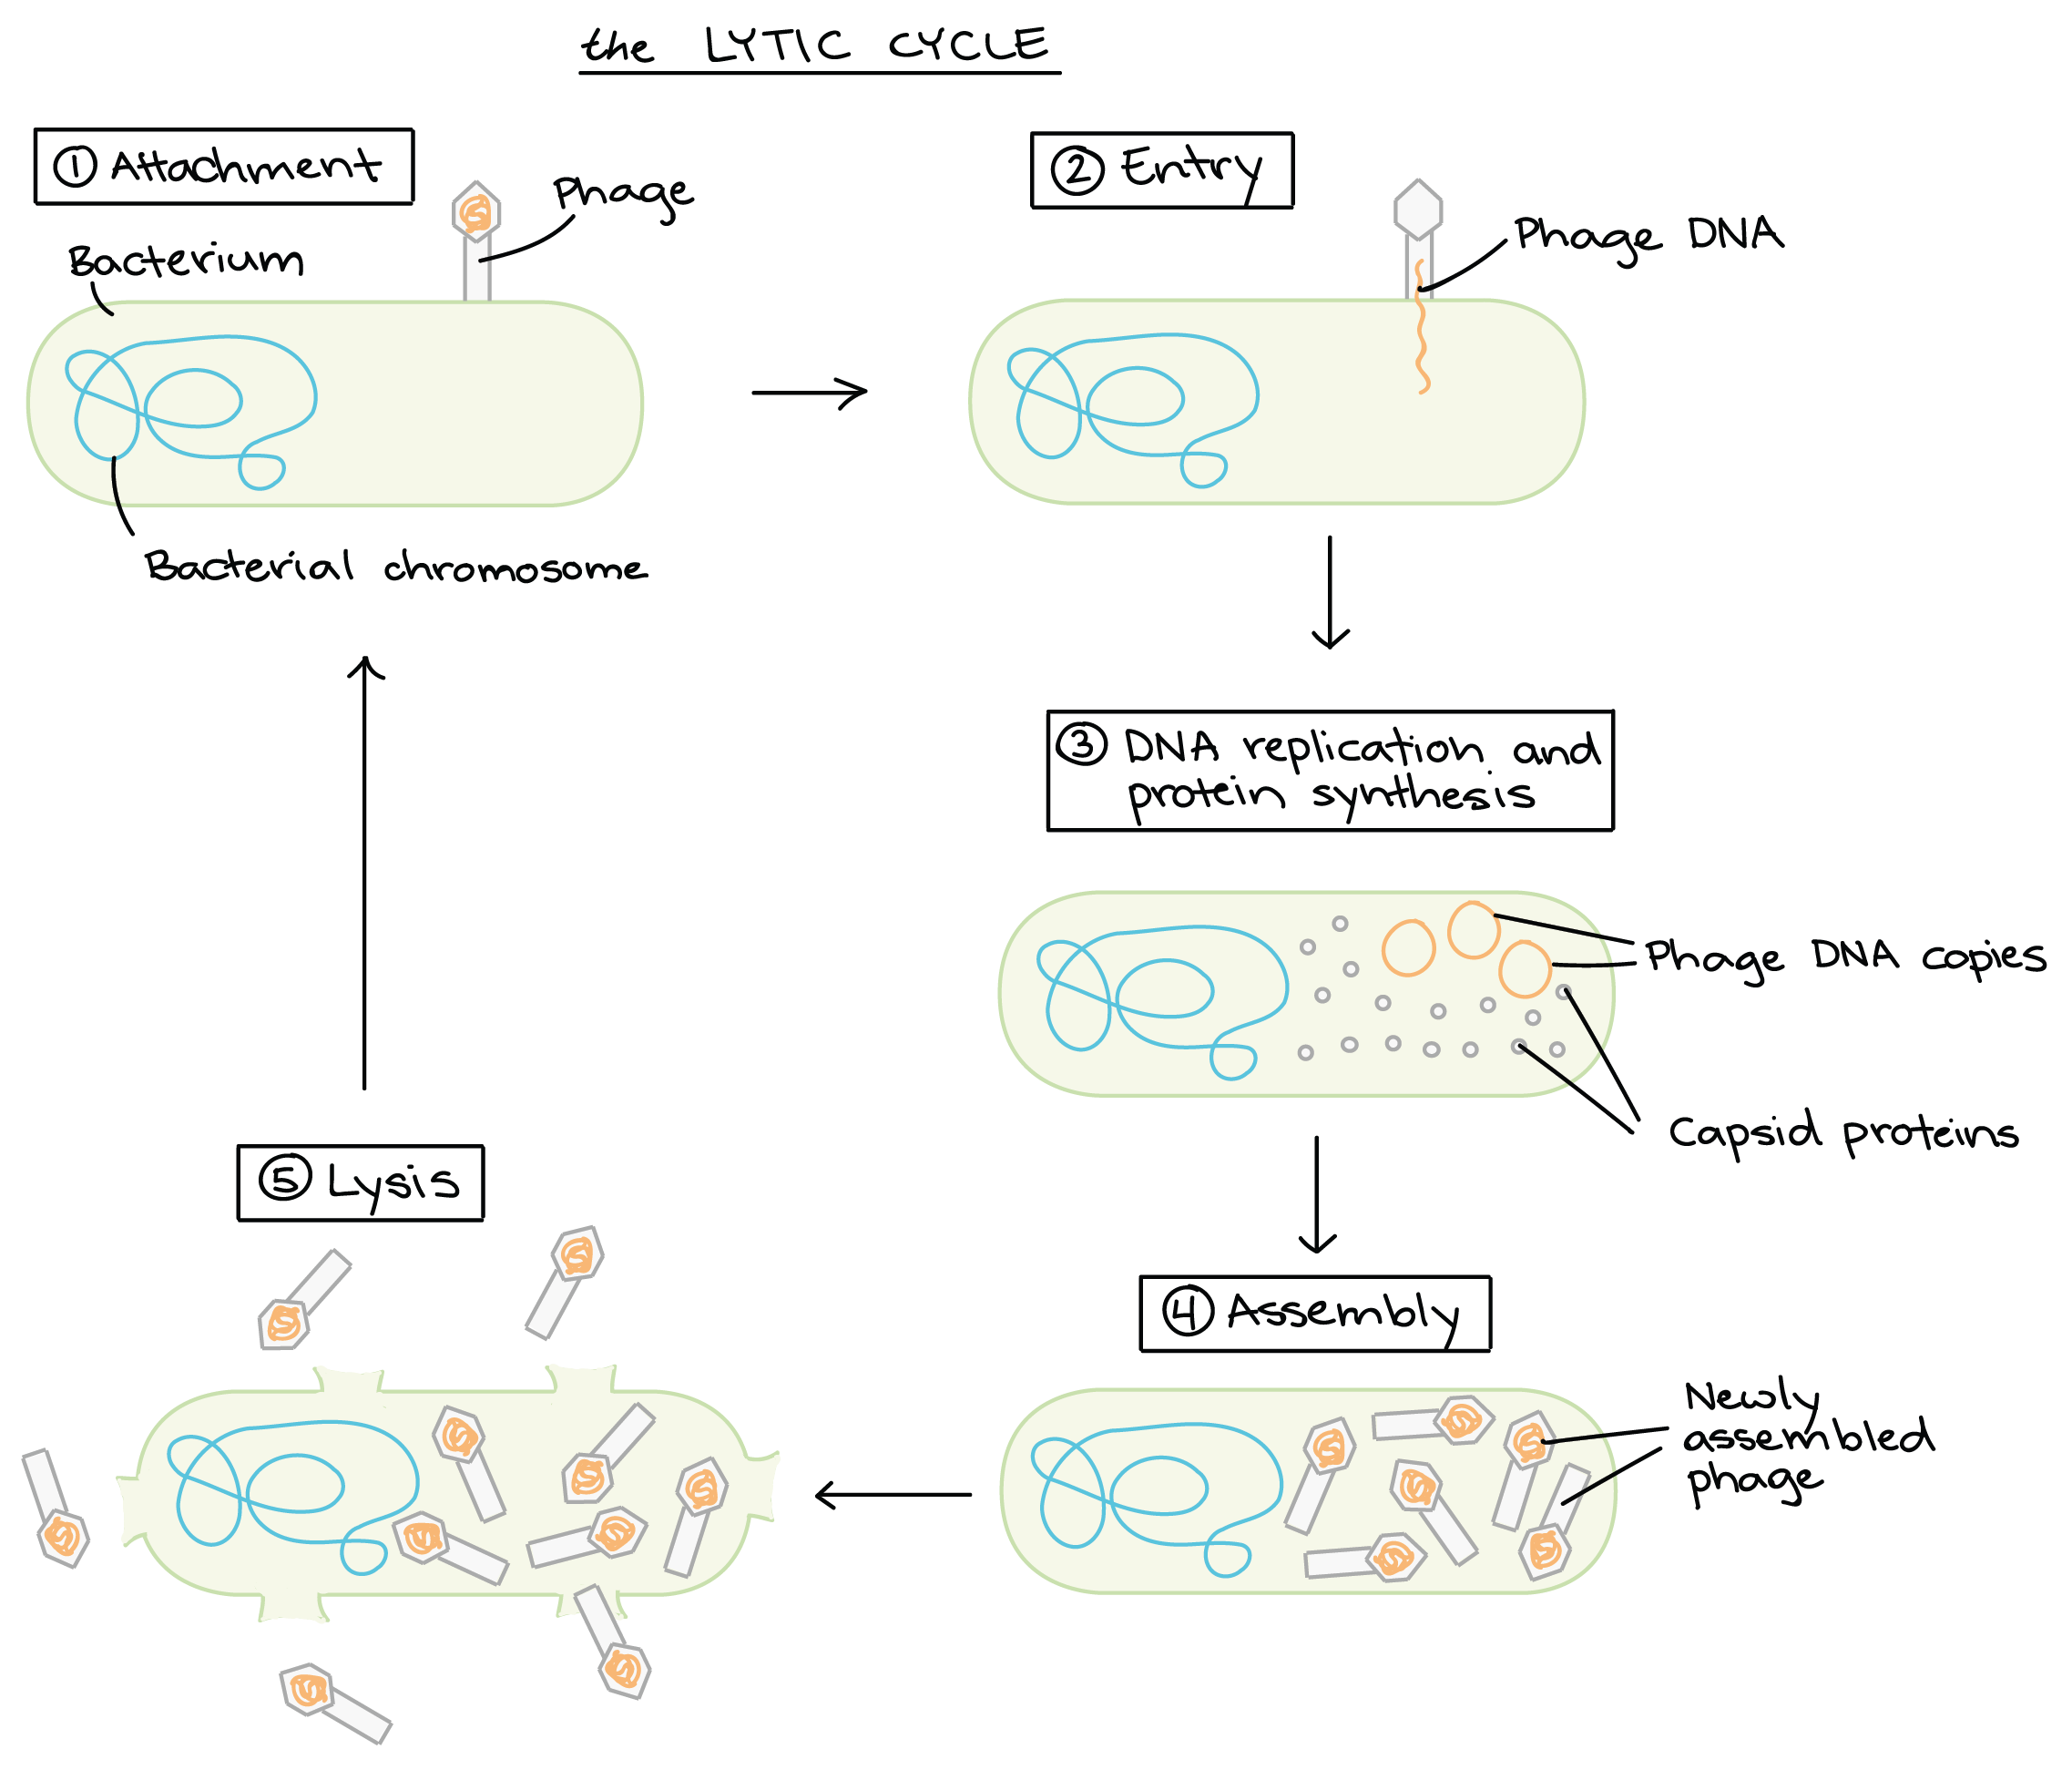 lytic cycle diagram 5 steps